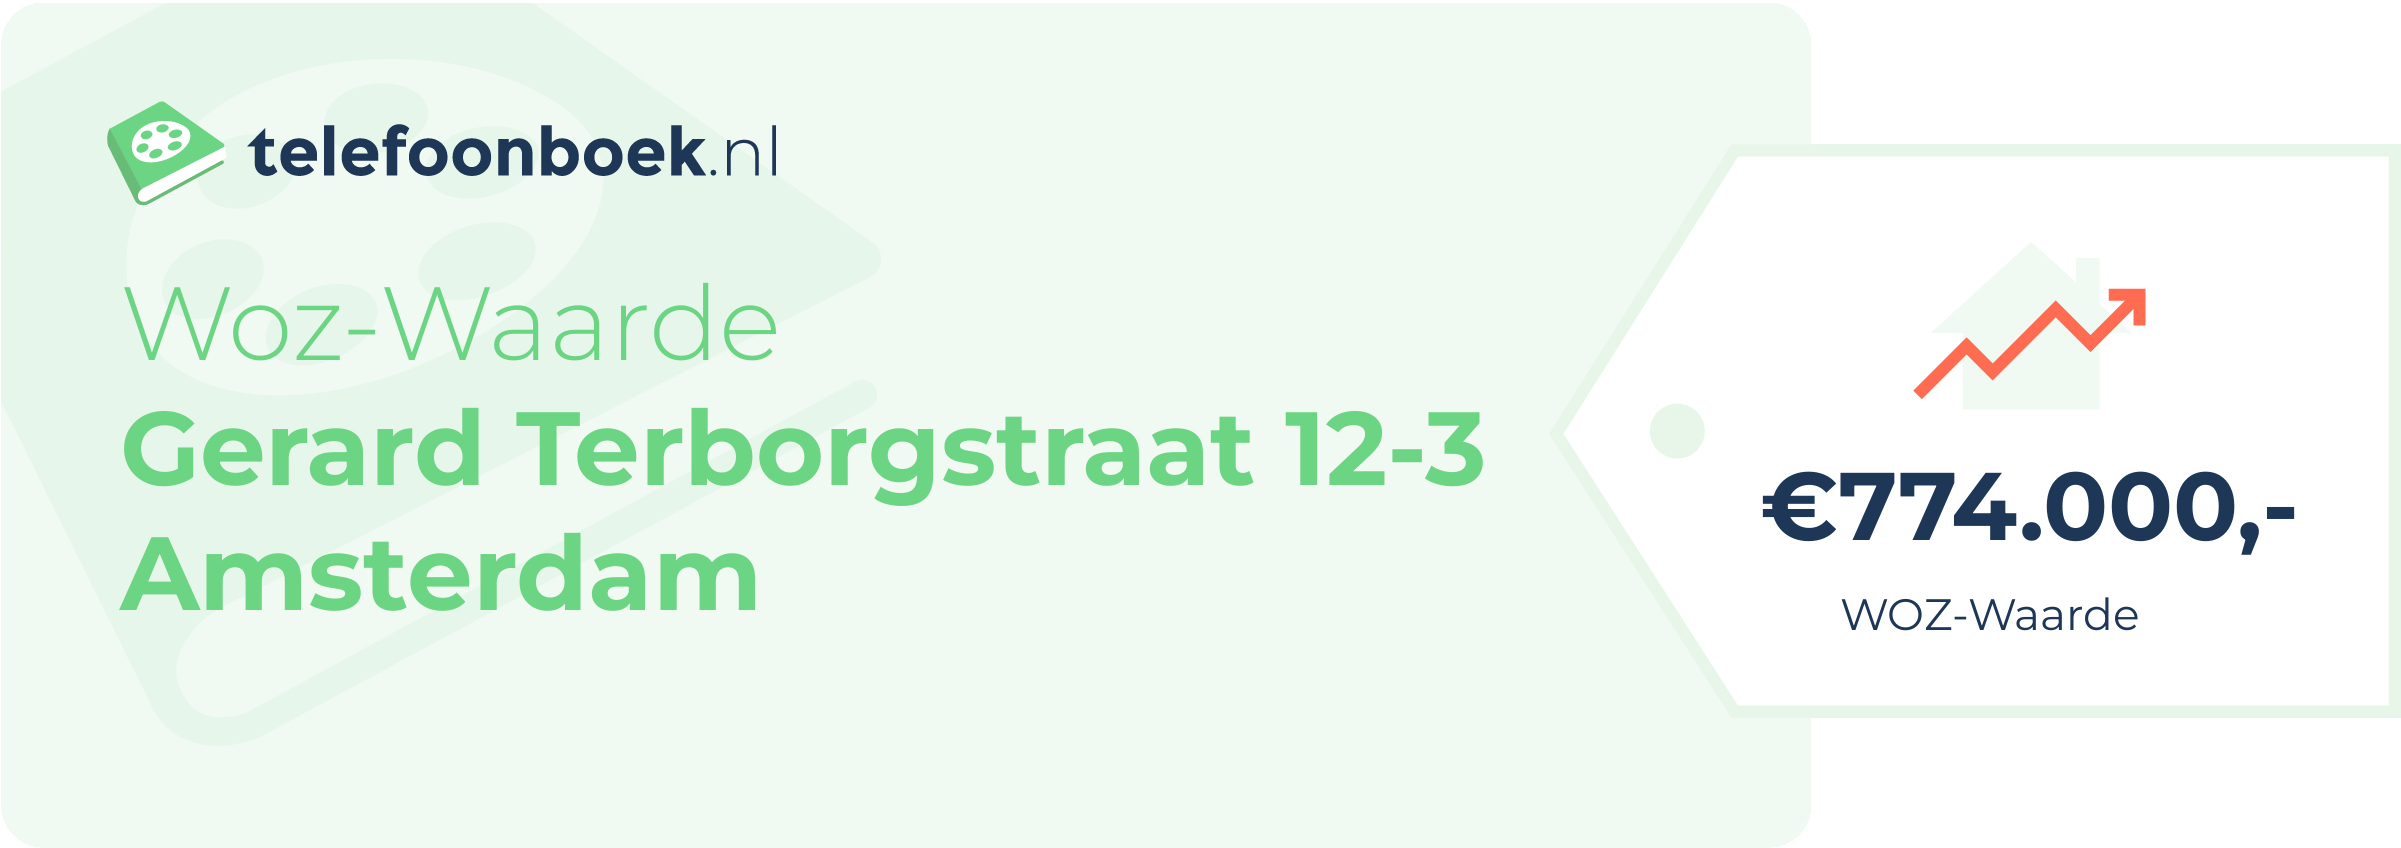 WOZ-waarde Gerard Terborgstraat 12-3 Amsterdam